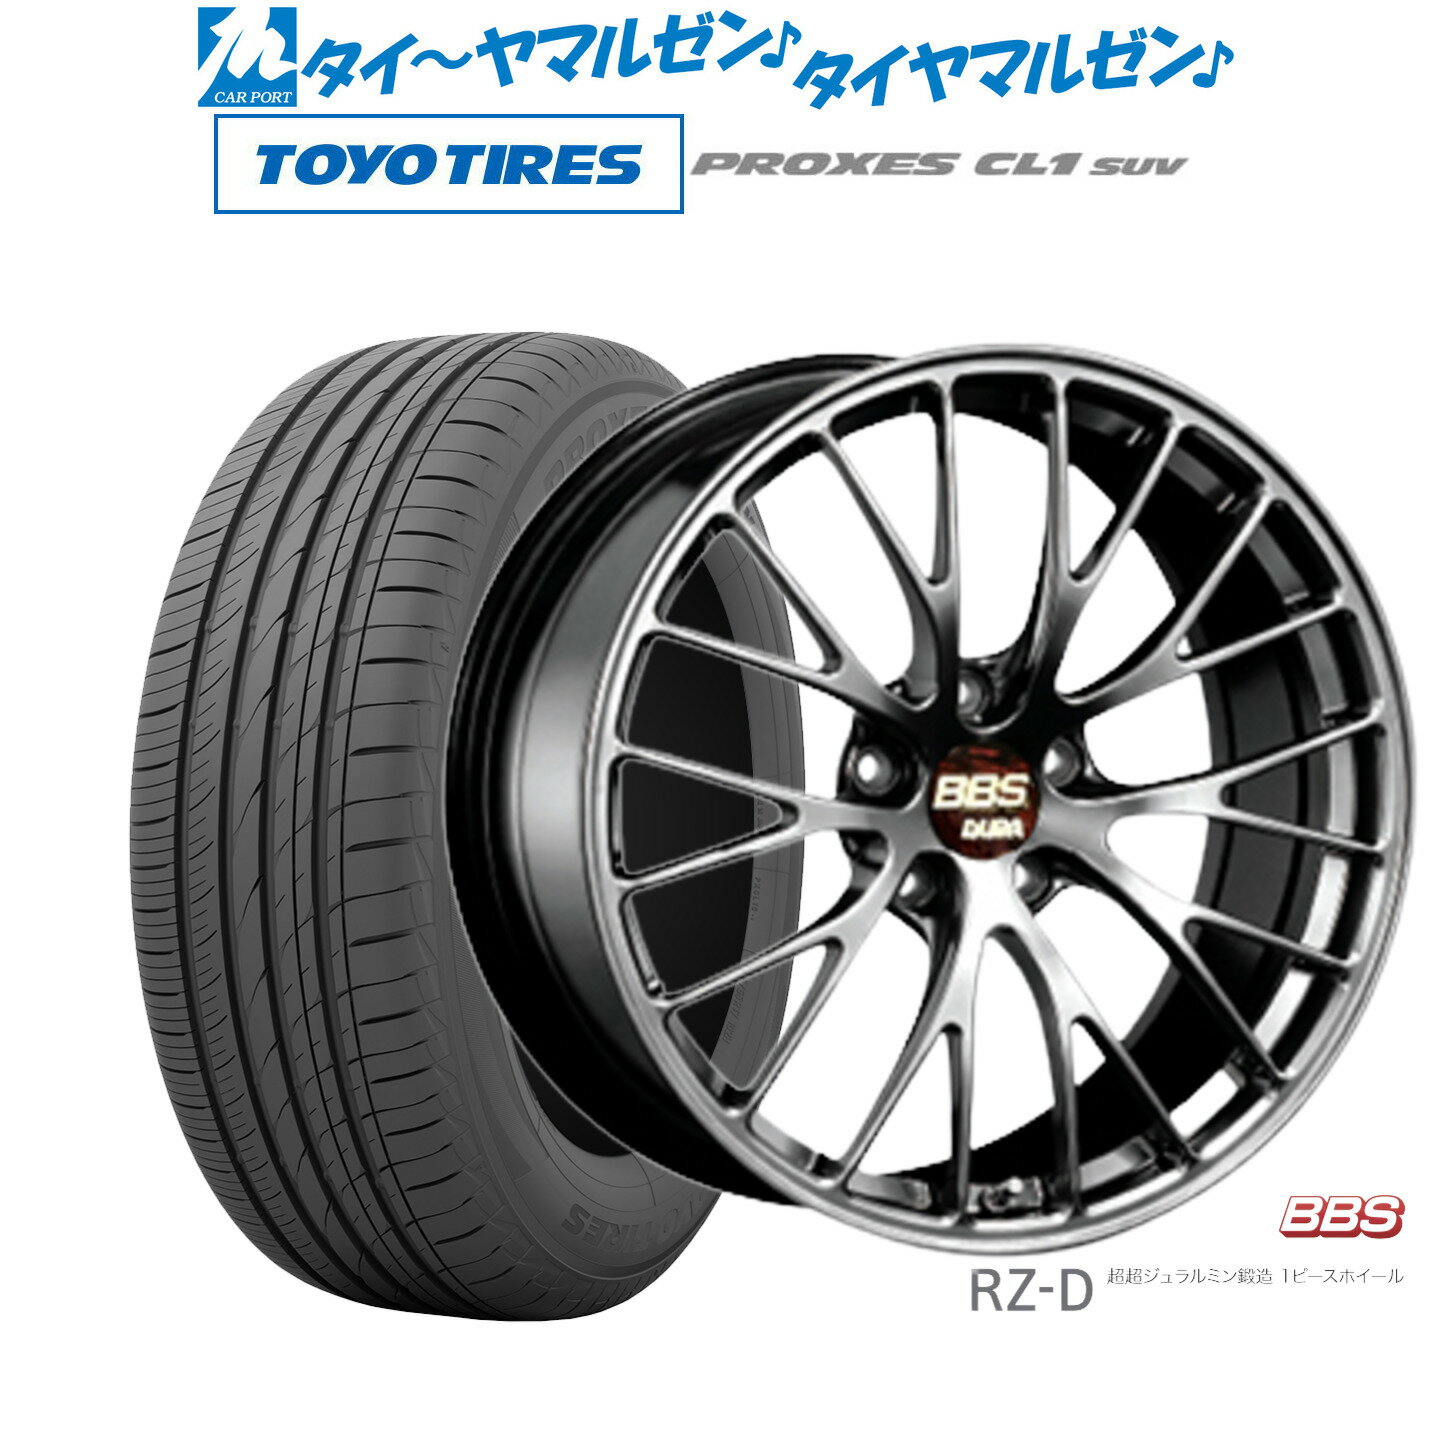 [5/20]割引クーポン配布新品 サマータイヤ ホイール4本セットBBS JAPAN RZ-D20インチ 8.5Jトーヨータイヤ プロクセス PROXES CL1 SUV 245/40R20